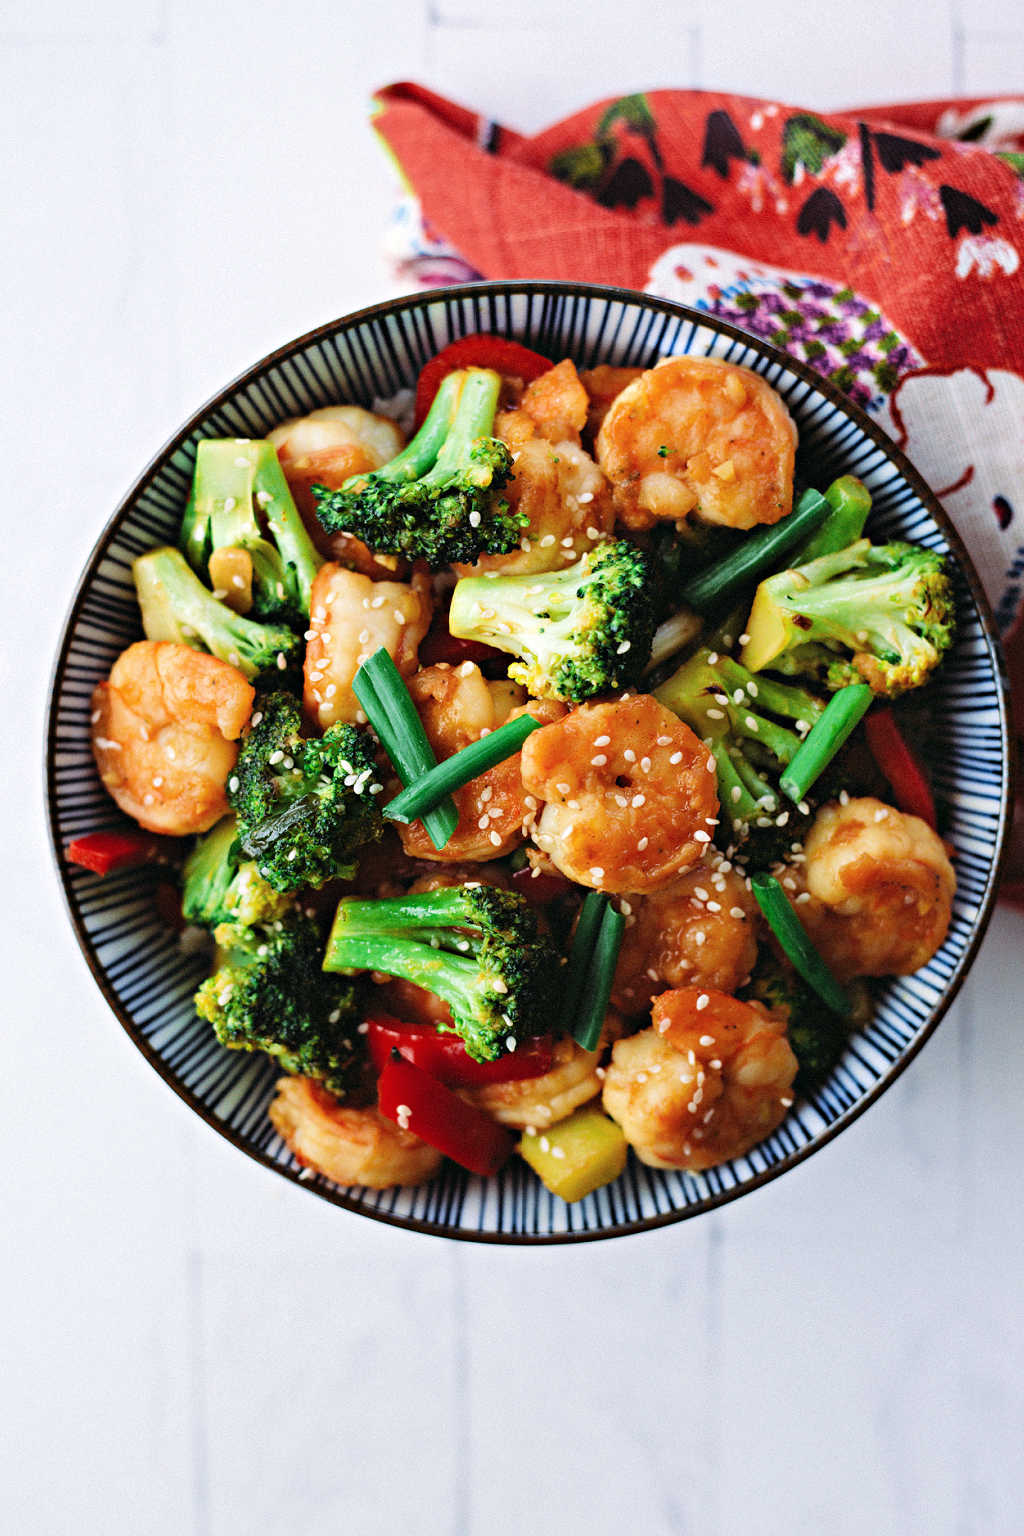 shrimp broccoli stir fry in a bowl on a table